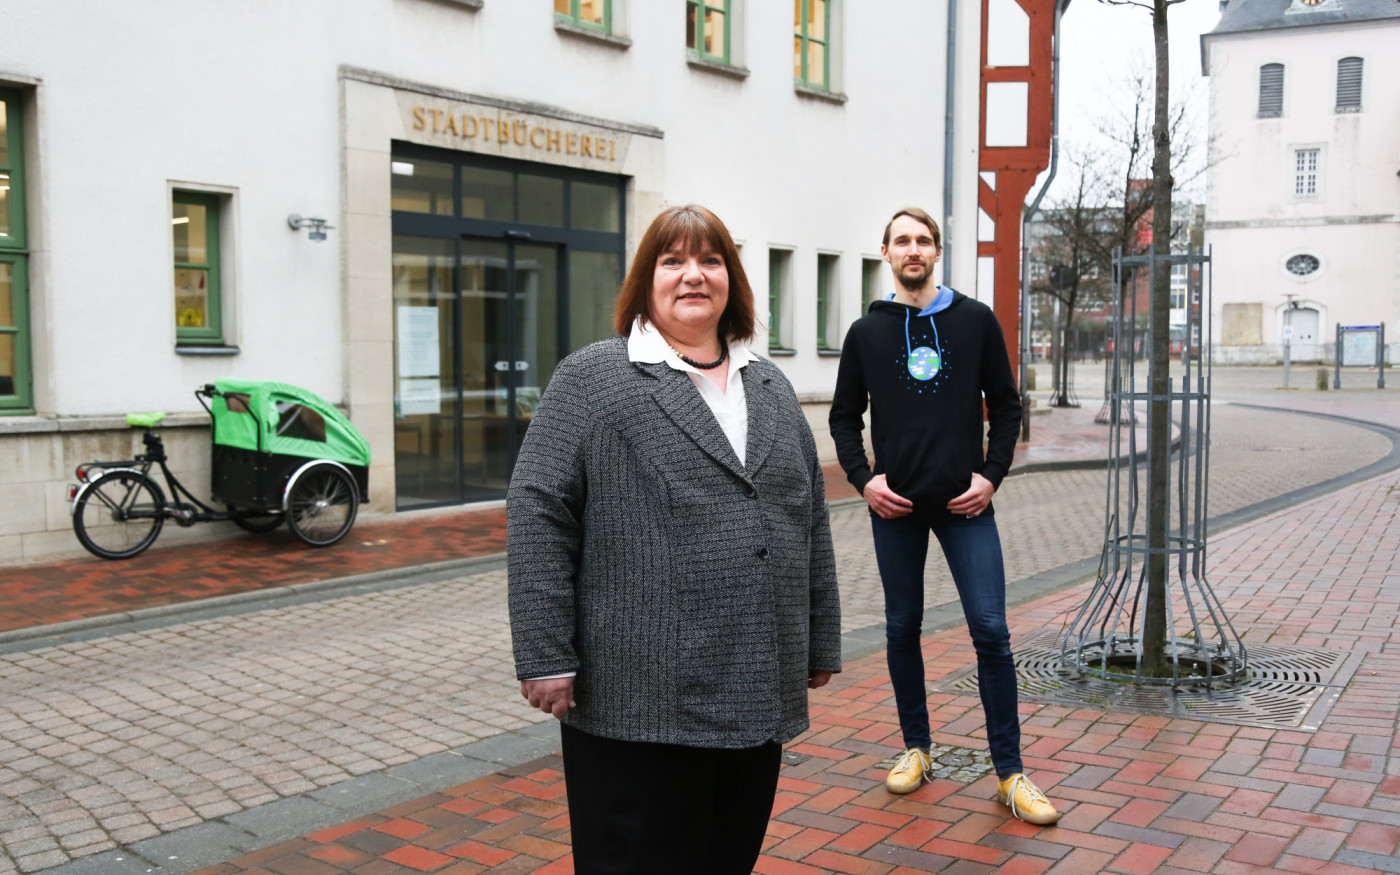 Die Bücherei als Mittelpunkt der Stadt Gifhorn - Der Plan der Grünen sieht vor, die Innenstadt zu beleben und kulturell aufzuwerten